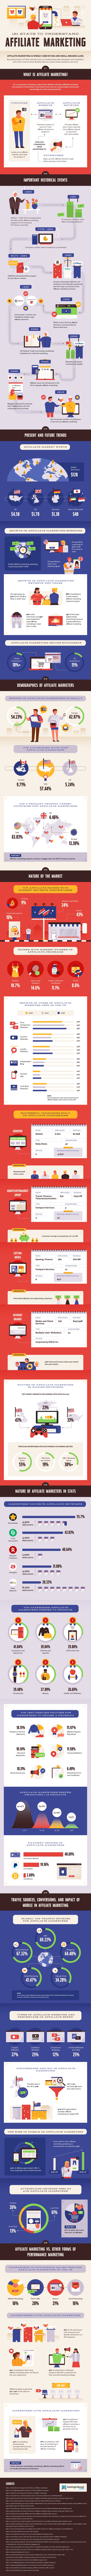 Affiliate Marketing Basics Infographic